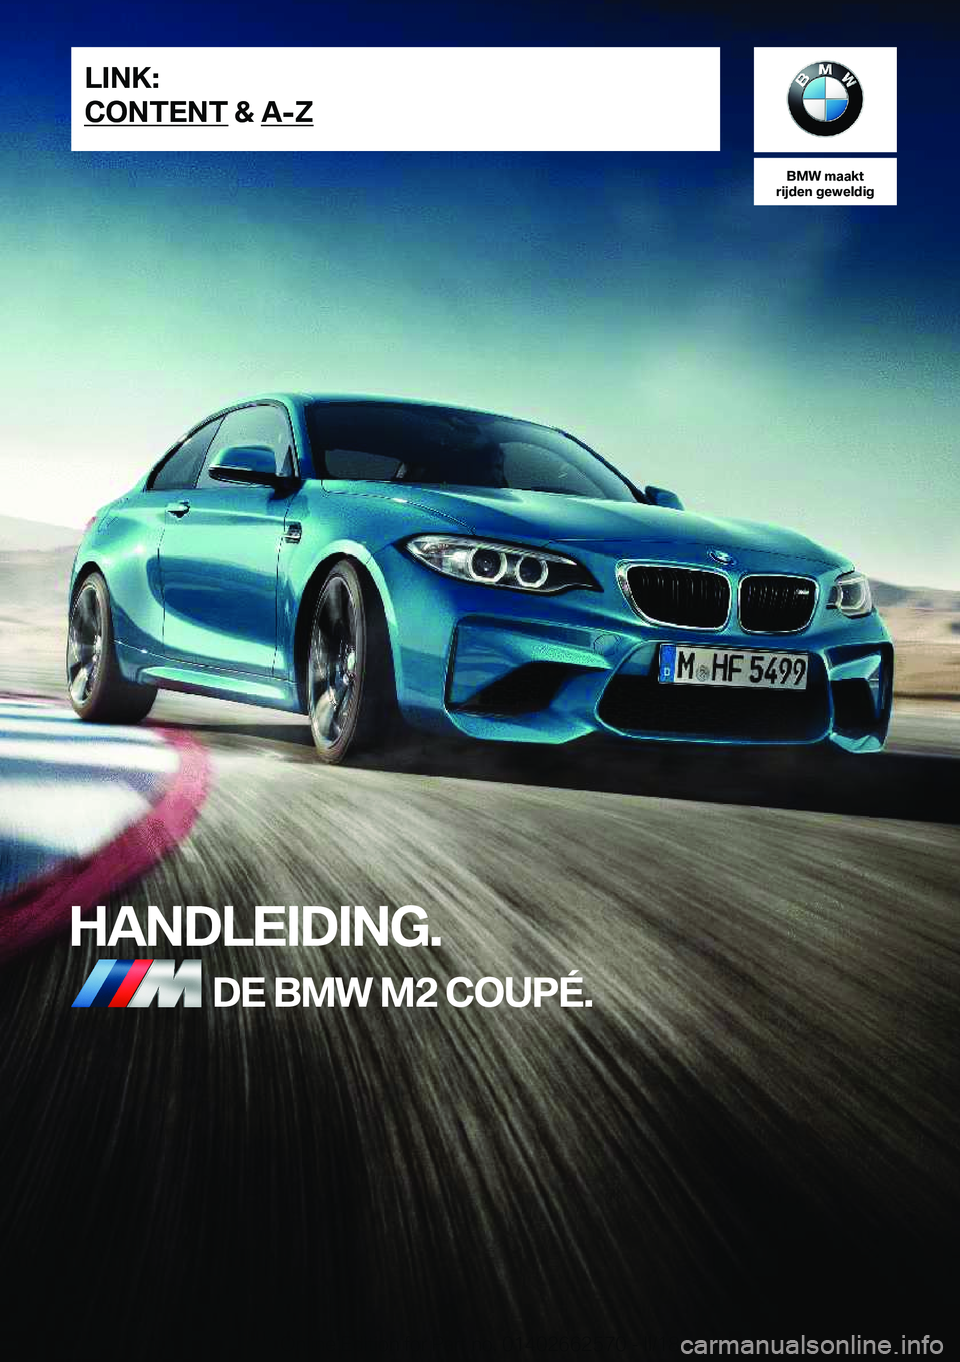 BMW M2 2018  Instructieboekjes (in Dutch) �B�M�W��m�a�a�k�t
�r�i�j�d�e�n��g�e�w�e�l�d�i�g
�H�A�N�D�L�E�I�D�I�N�G�.�D�E��B�M�W��M�2��C�O�U�P�